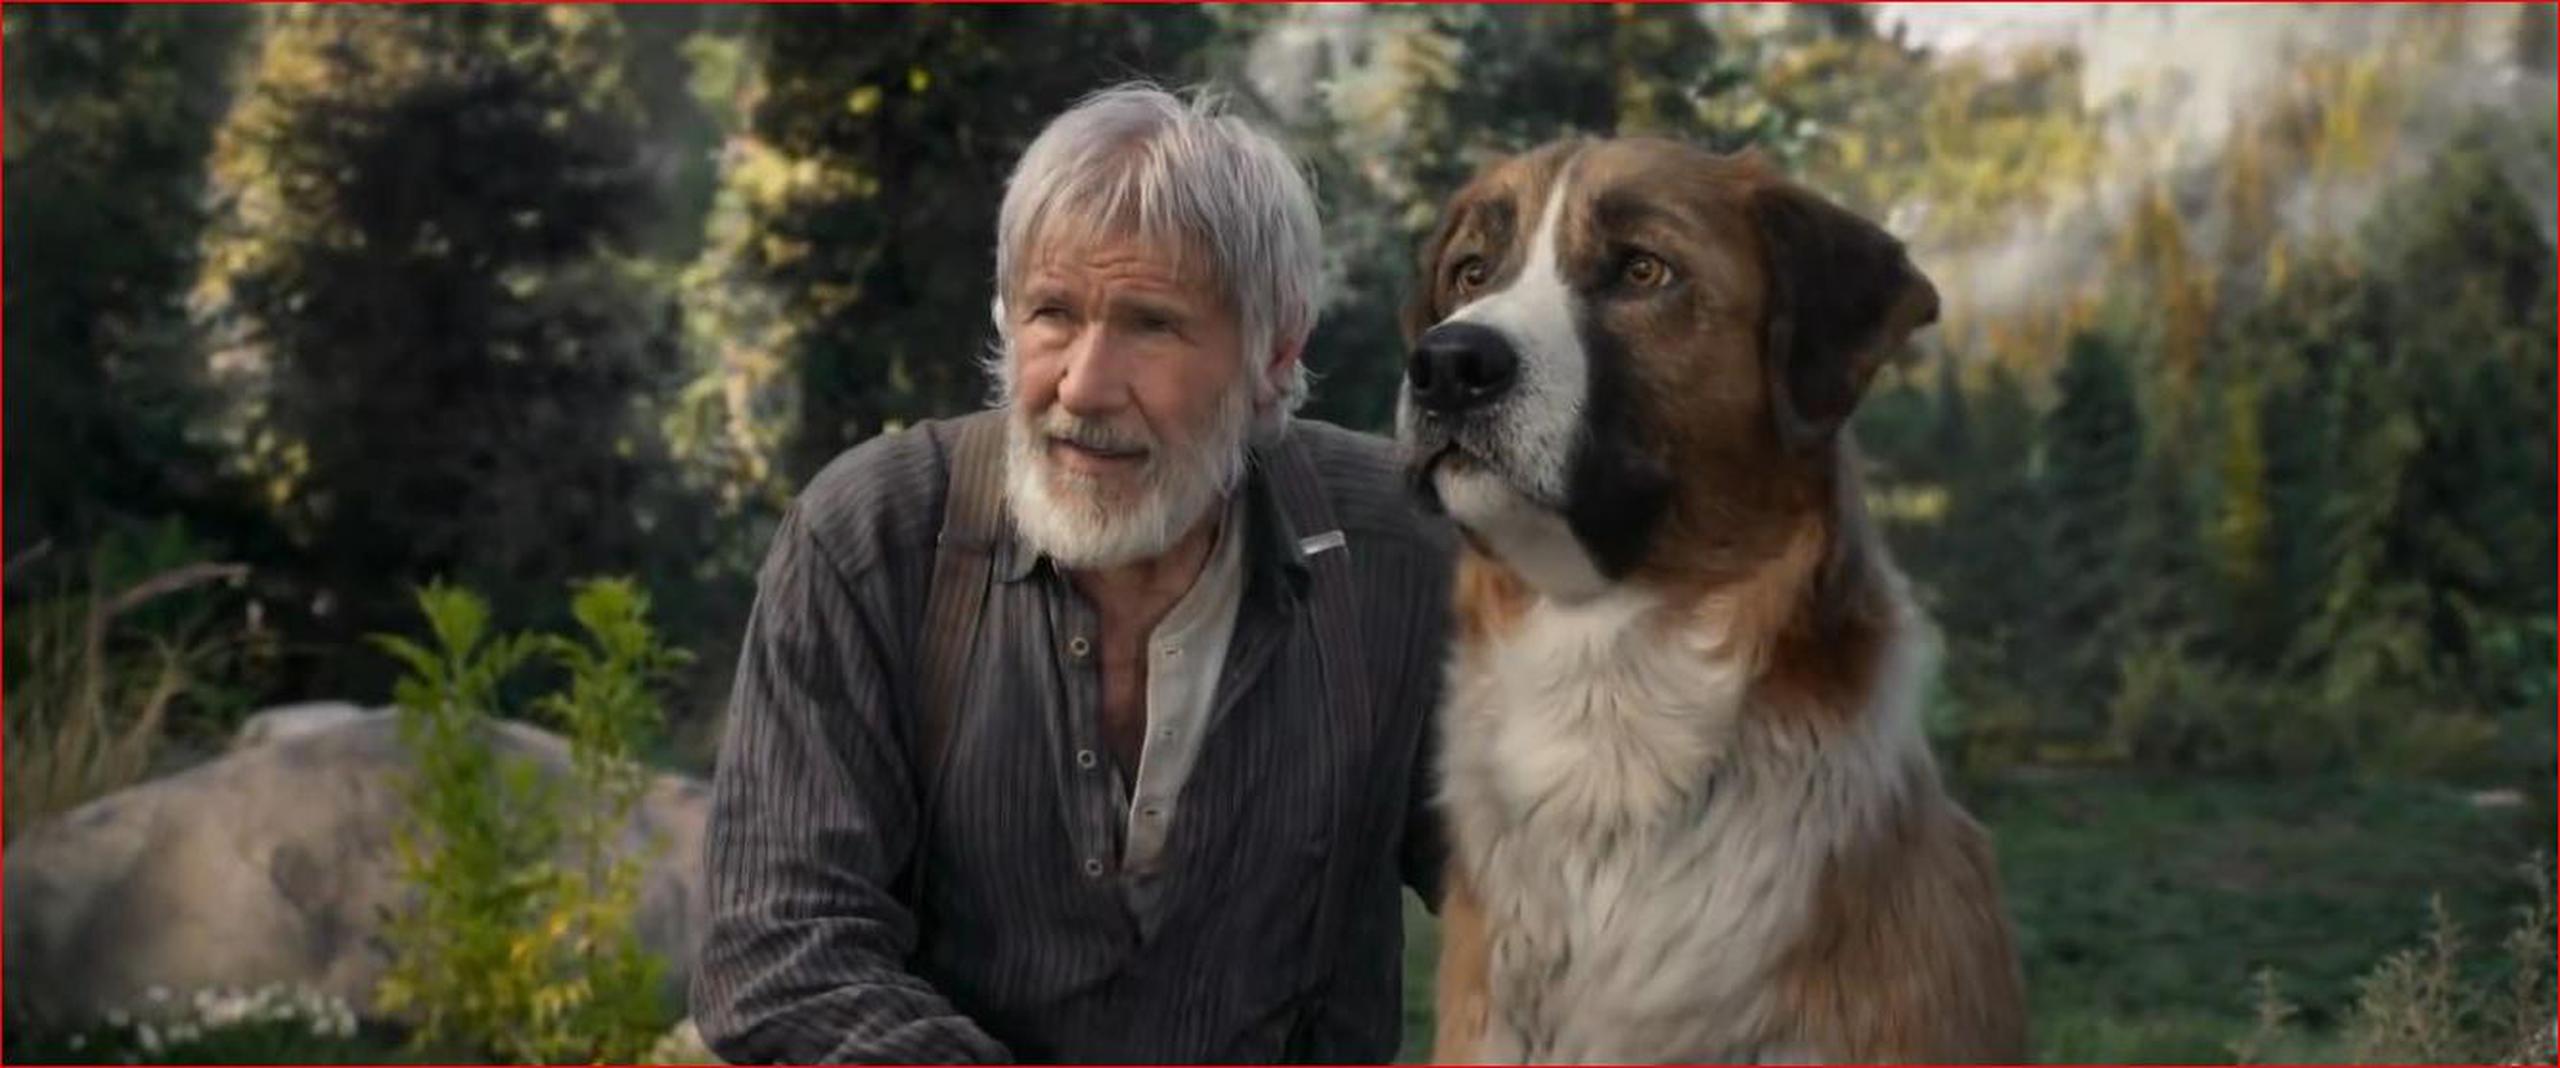 El actor encarna a “John Thornton”, un buscador de oro que adopta a un perro que se convierte en su compañero fiel.